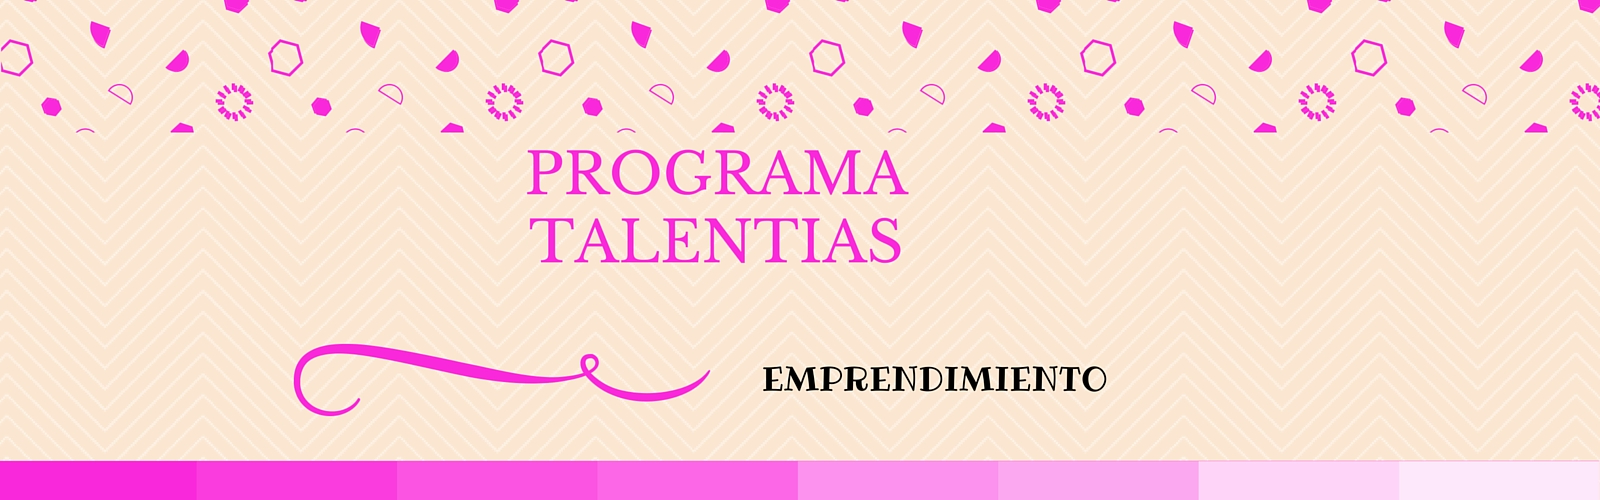 Emprendimiento en femenino plural: programa Talentias